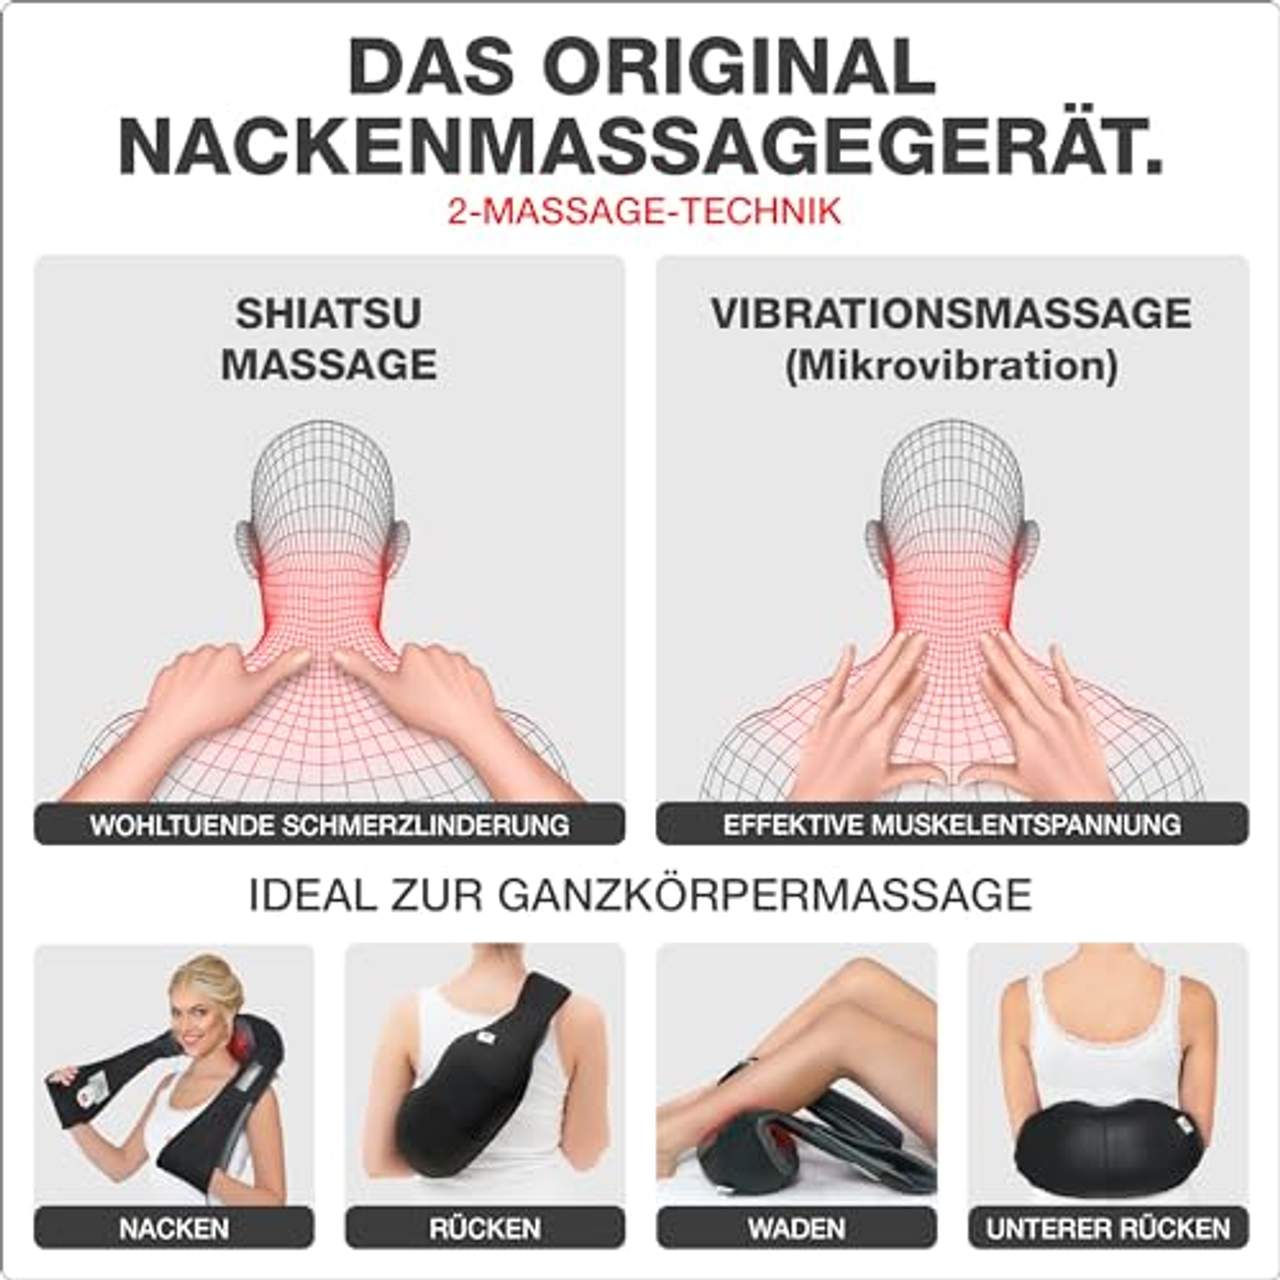 Donnerberg Nackenmassagegerät DAS ORIGINAL